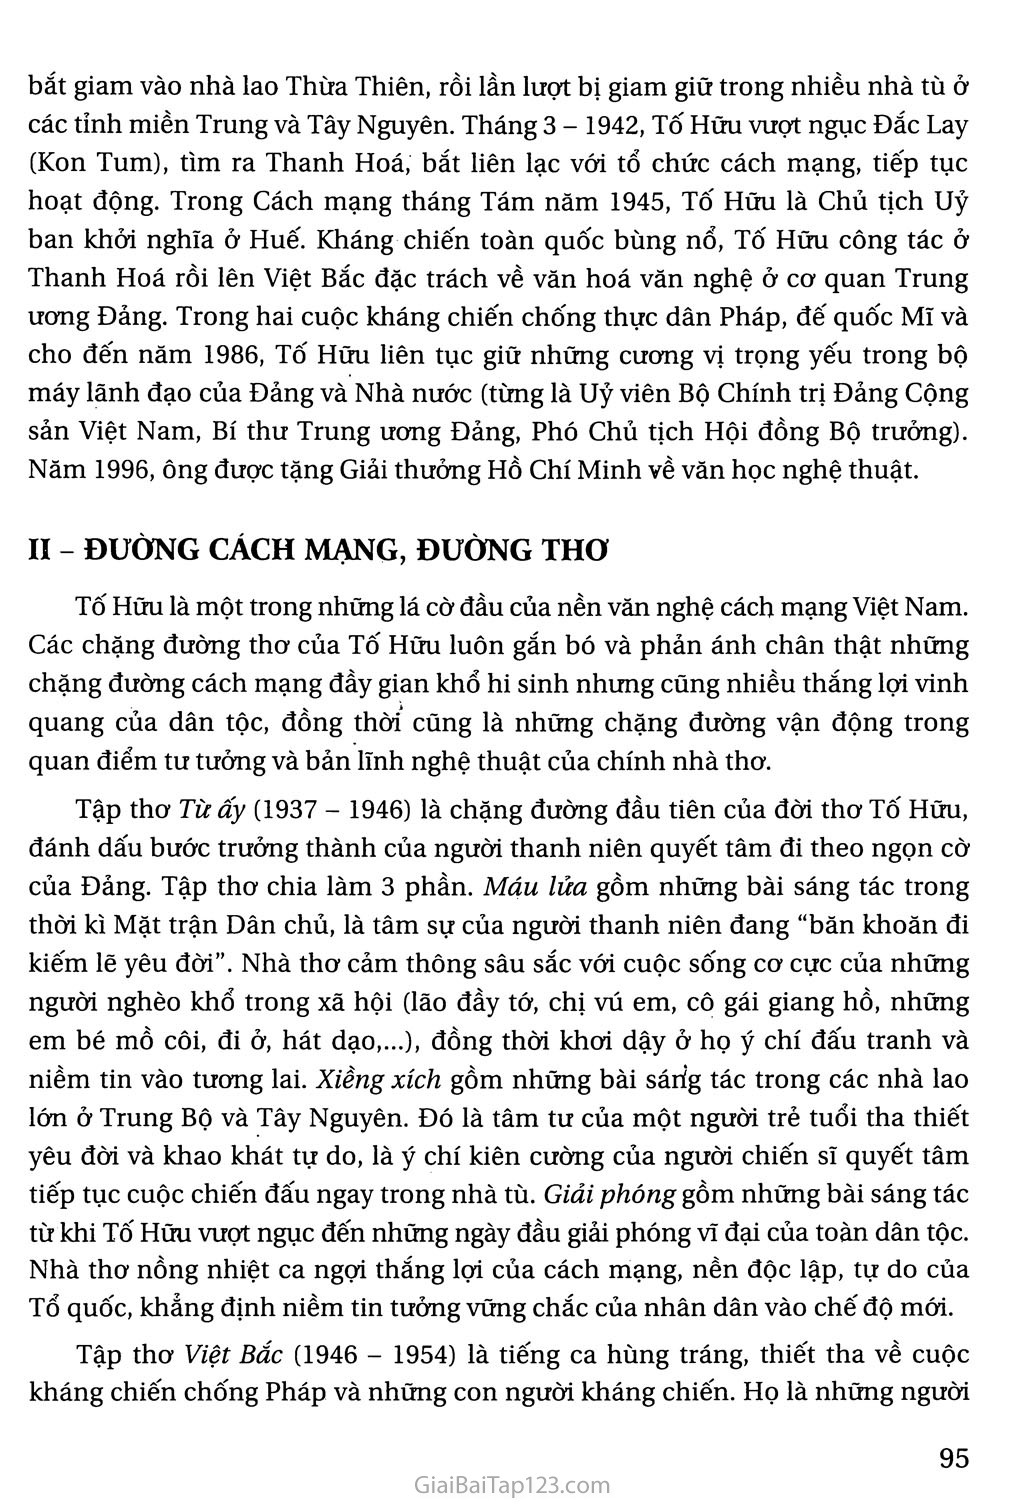 Việt Bắc (trích) trang 2